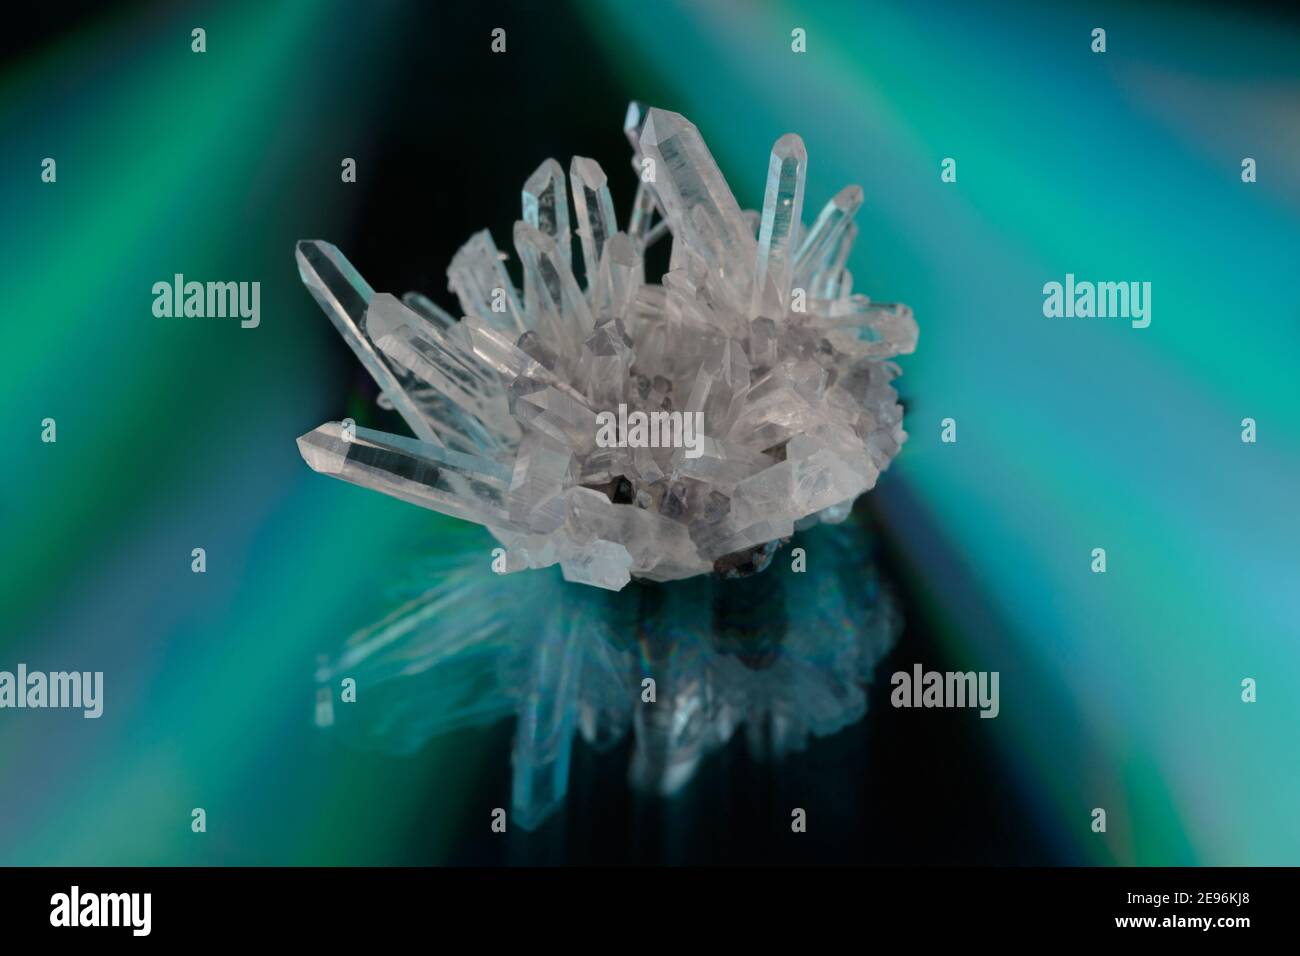 Ein Cluster von rohen klaren Quarzkristallen auf einem reflektierenden, irisierenden Hintergrund, der dreieckige Farbverläufe in Grün, Türkis und Violett erzeugt, Kopierraum Stockfoto